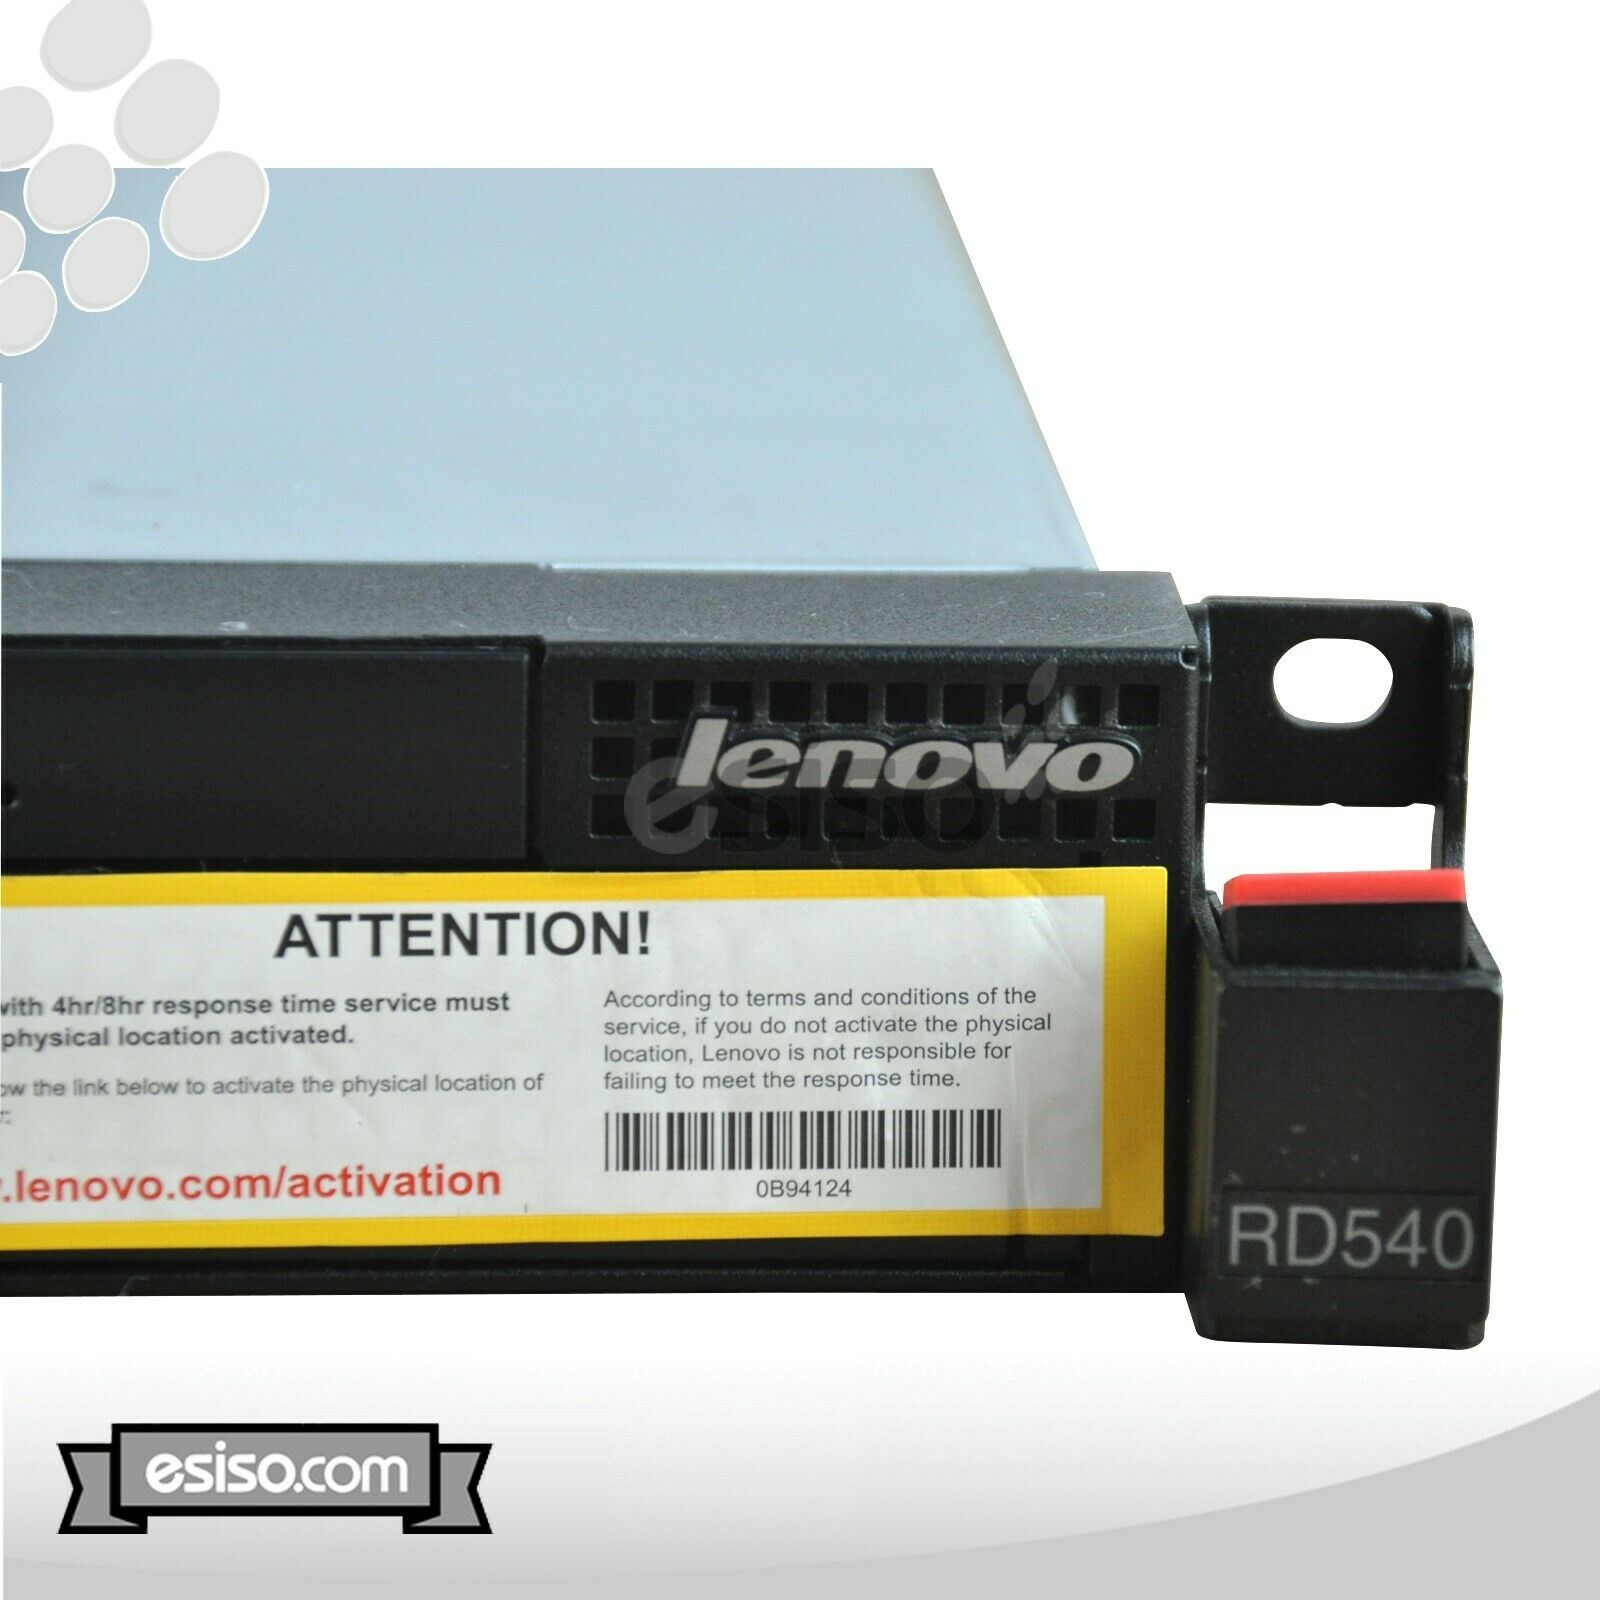 LENOVO THINKSERVER RD540 SFF 6 CORE E5-2640 2.5GHz 8GB RAM 9260-8i 1x PSU NO HDD